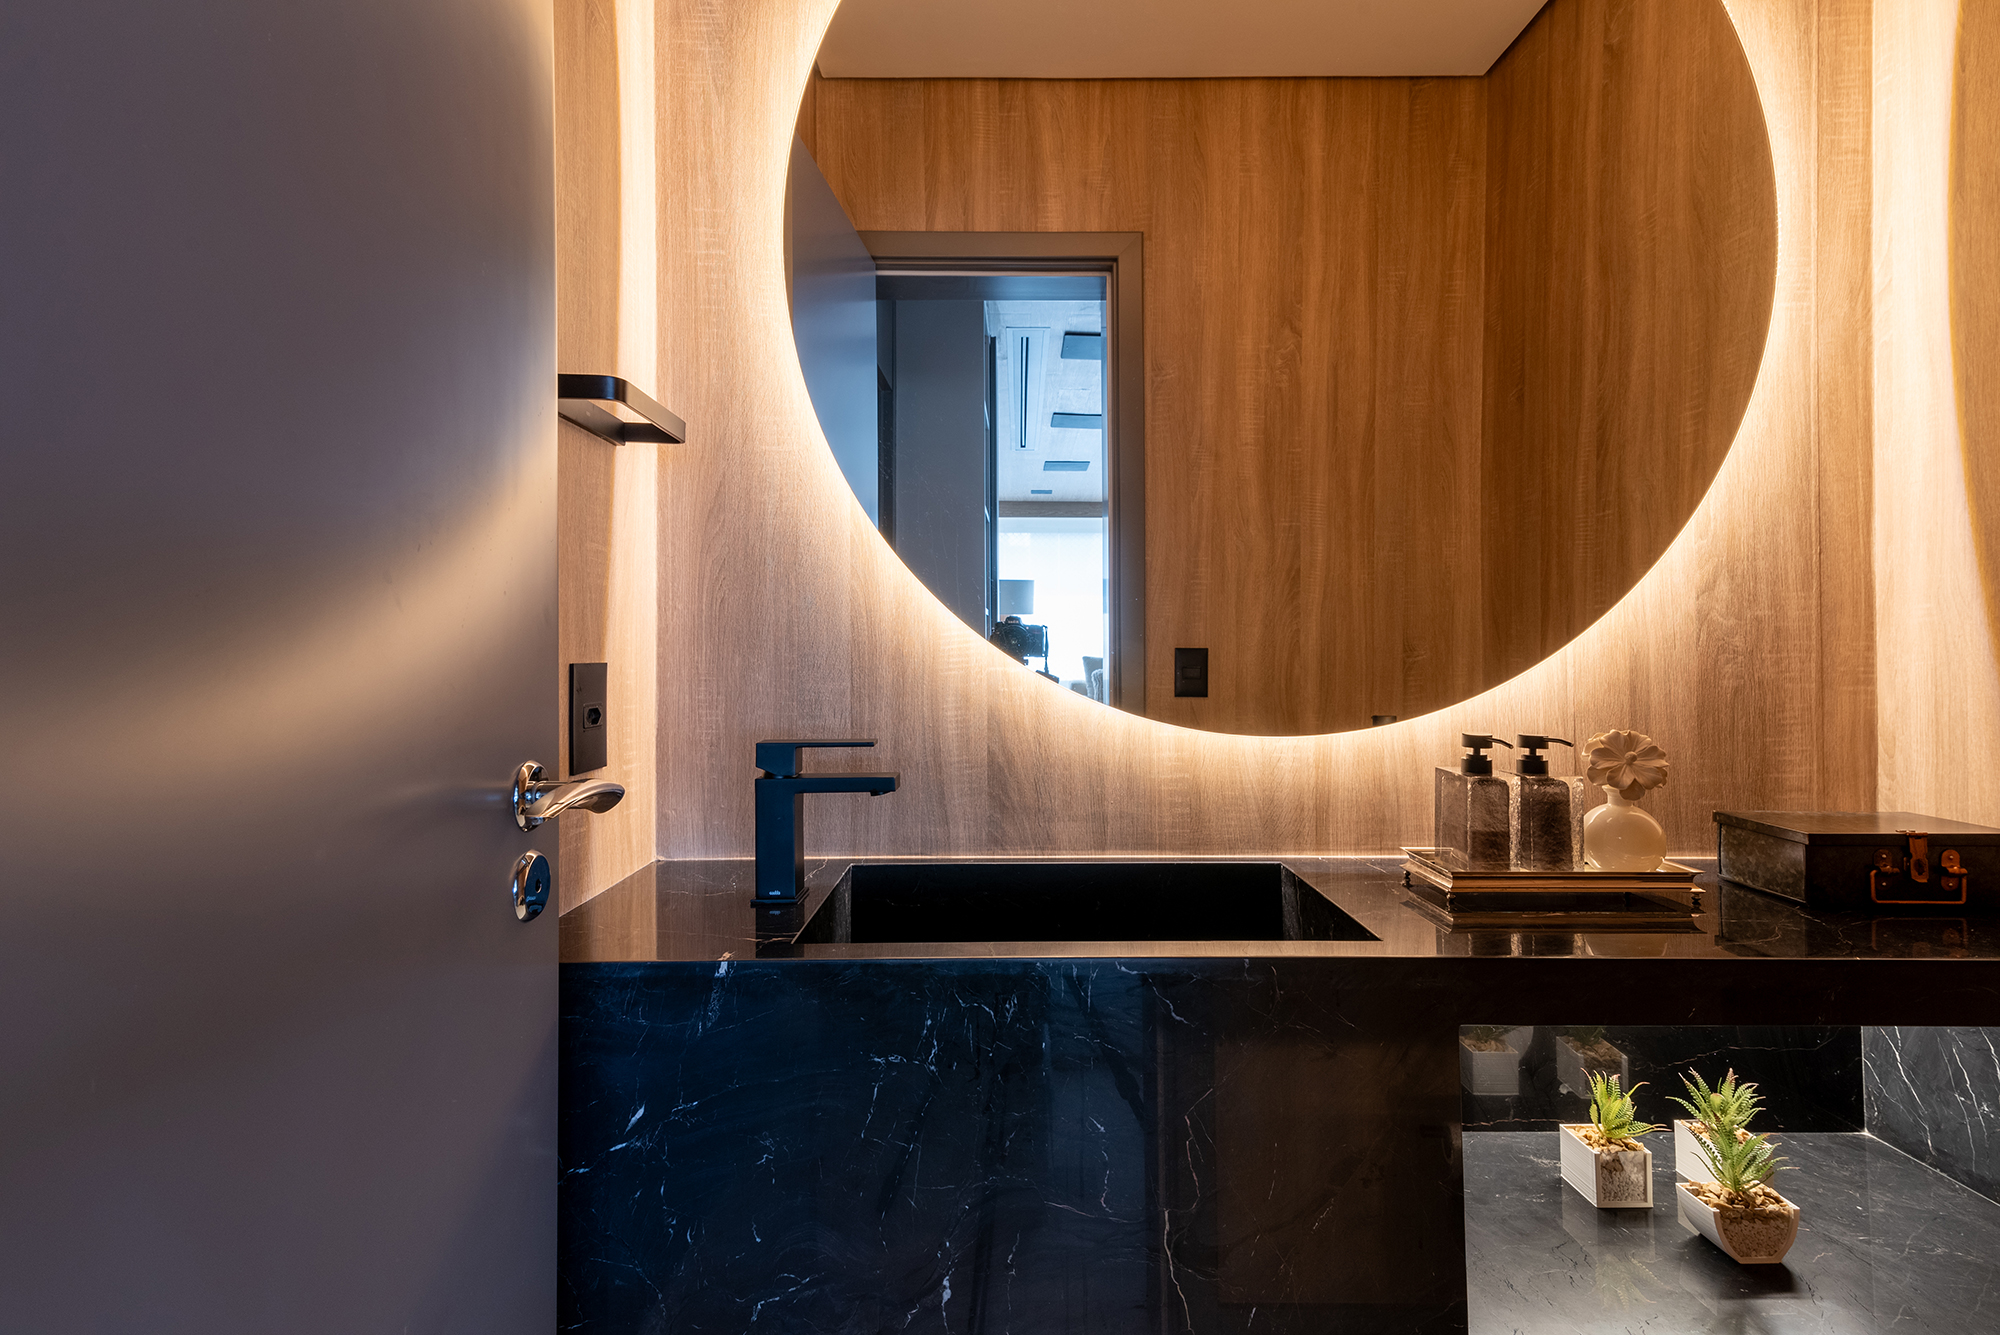 Apê de 211 m² com vista para Ponte Estaiada mescla pedras nobres no décor. Projeto de Juliana Sica. Na foto, lavabo com espelho redondo iluminado.